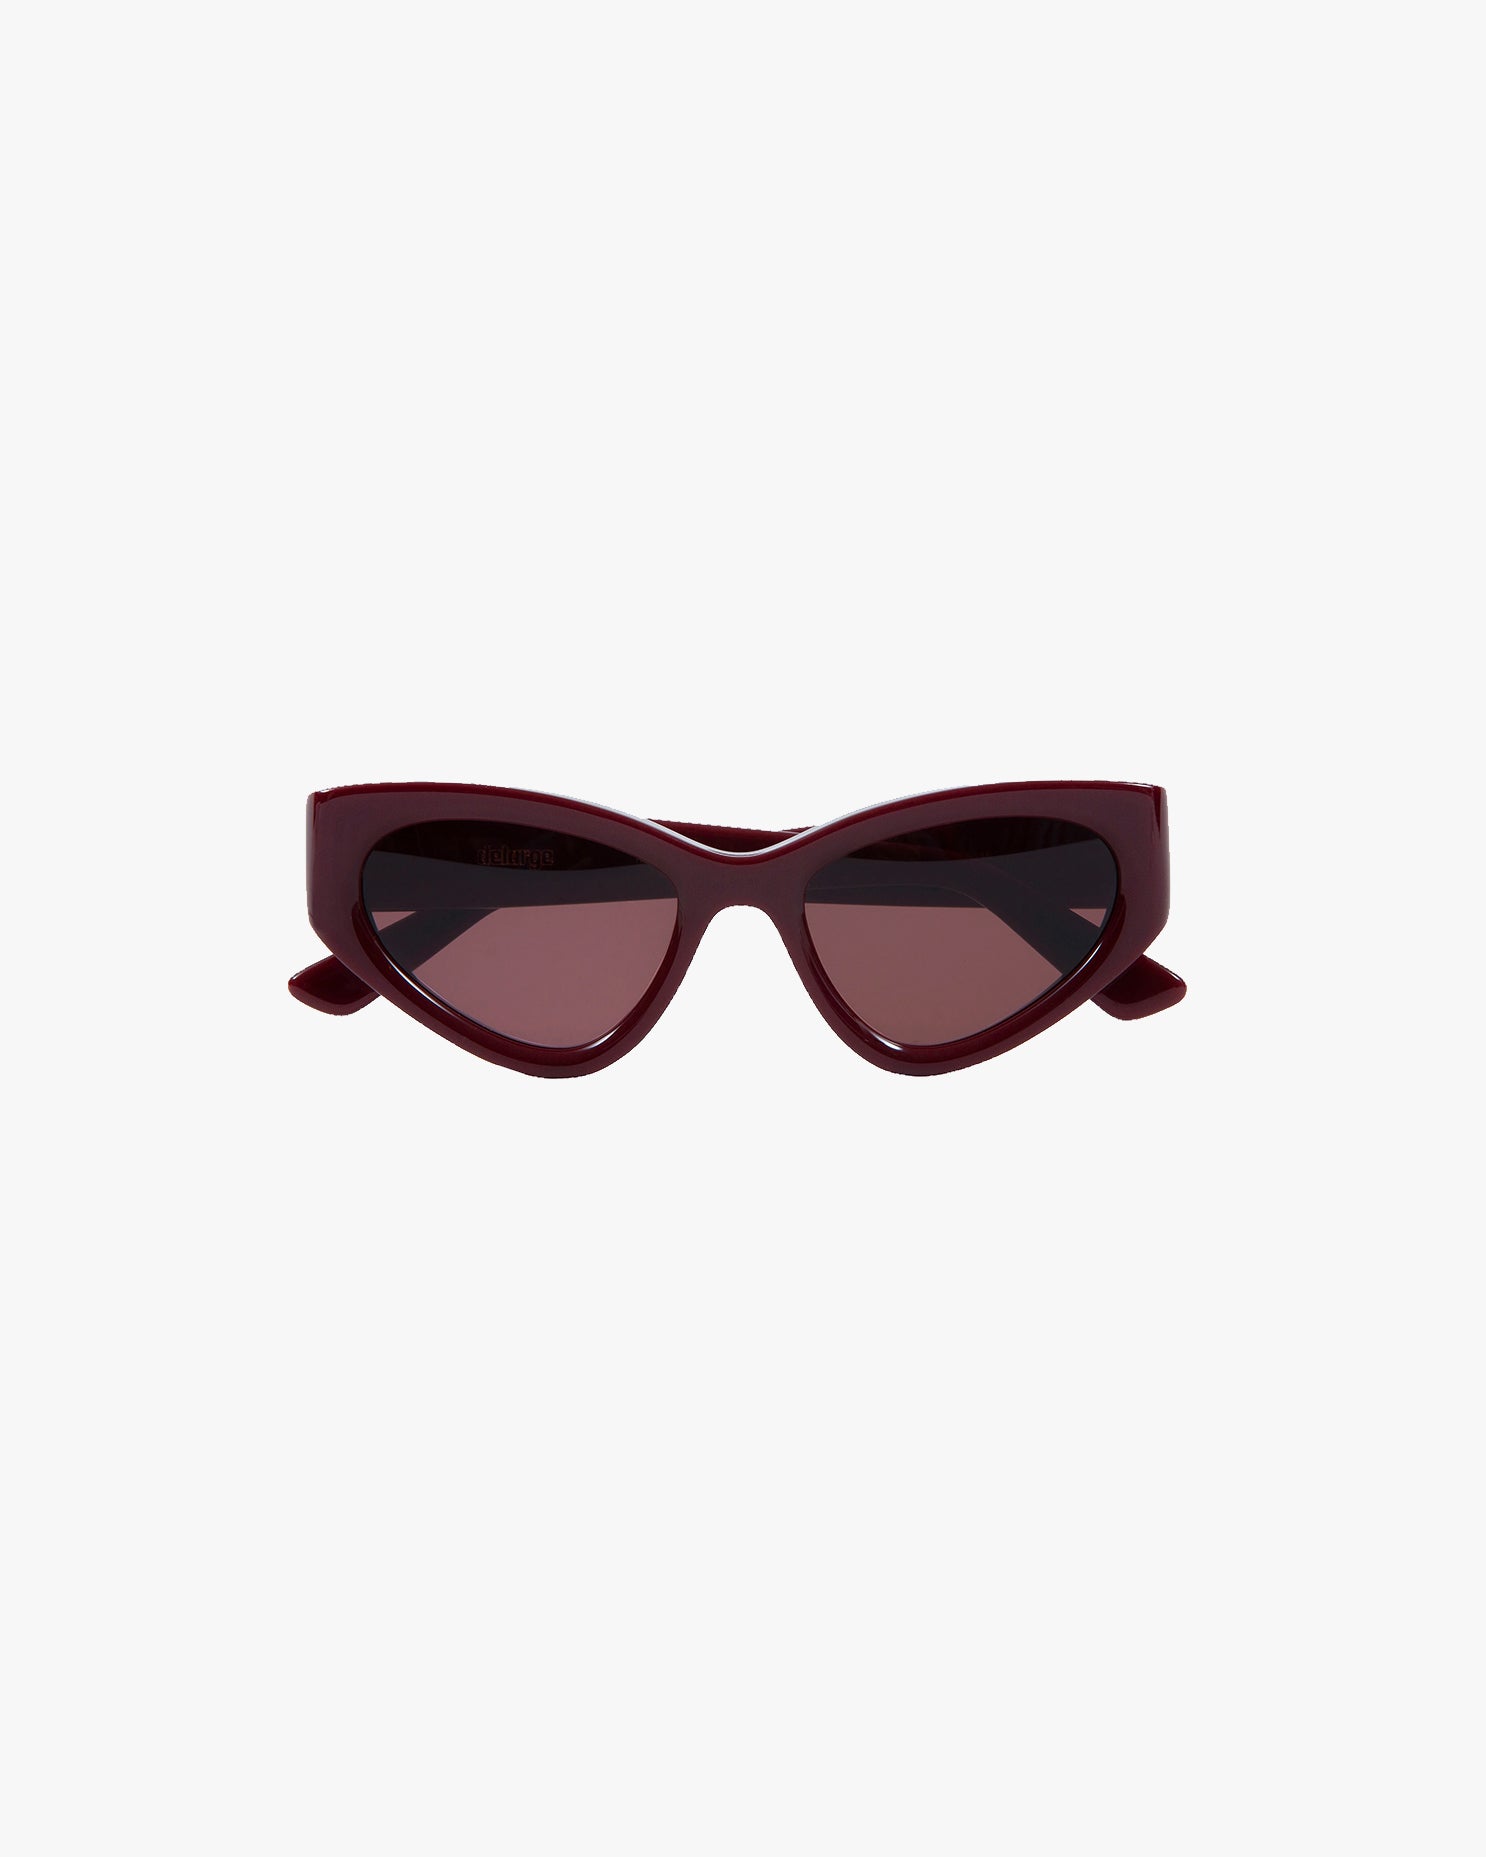 Shapes Sunglasses in Bordeaux